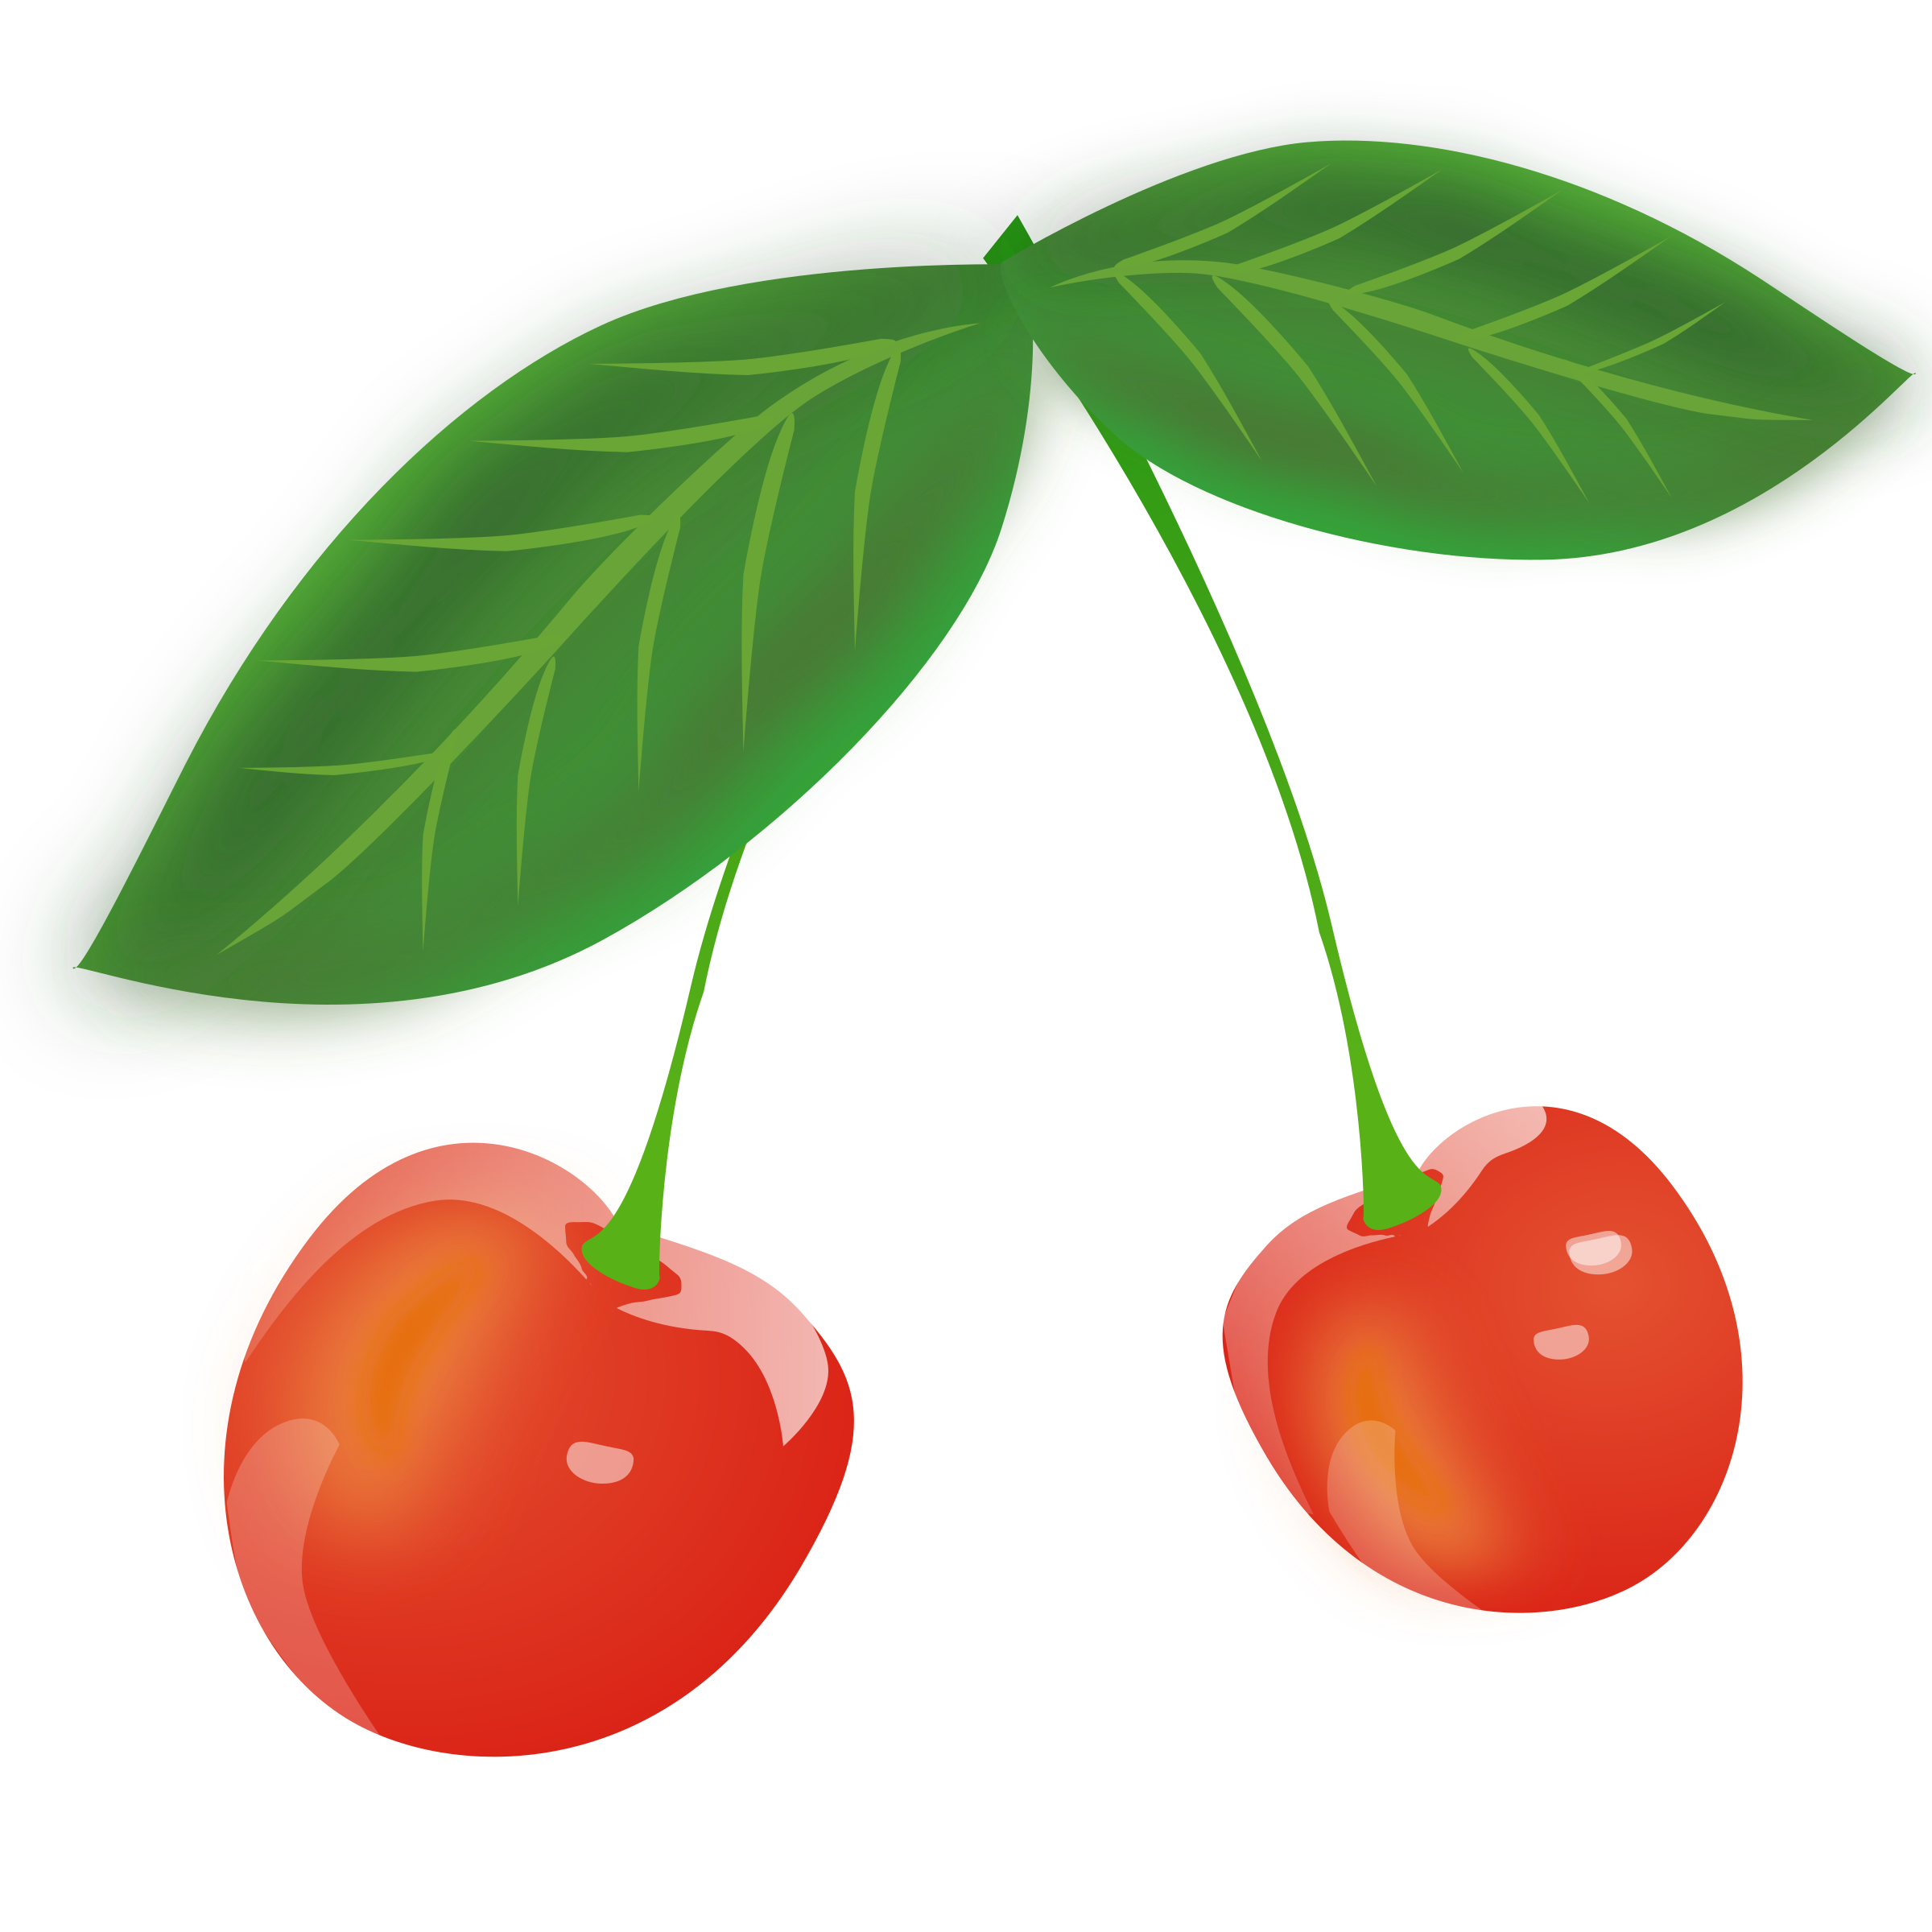 Cherries clipart ceri. Cherry